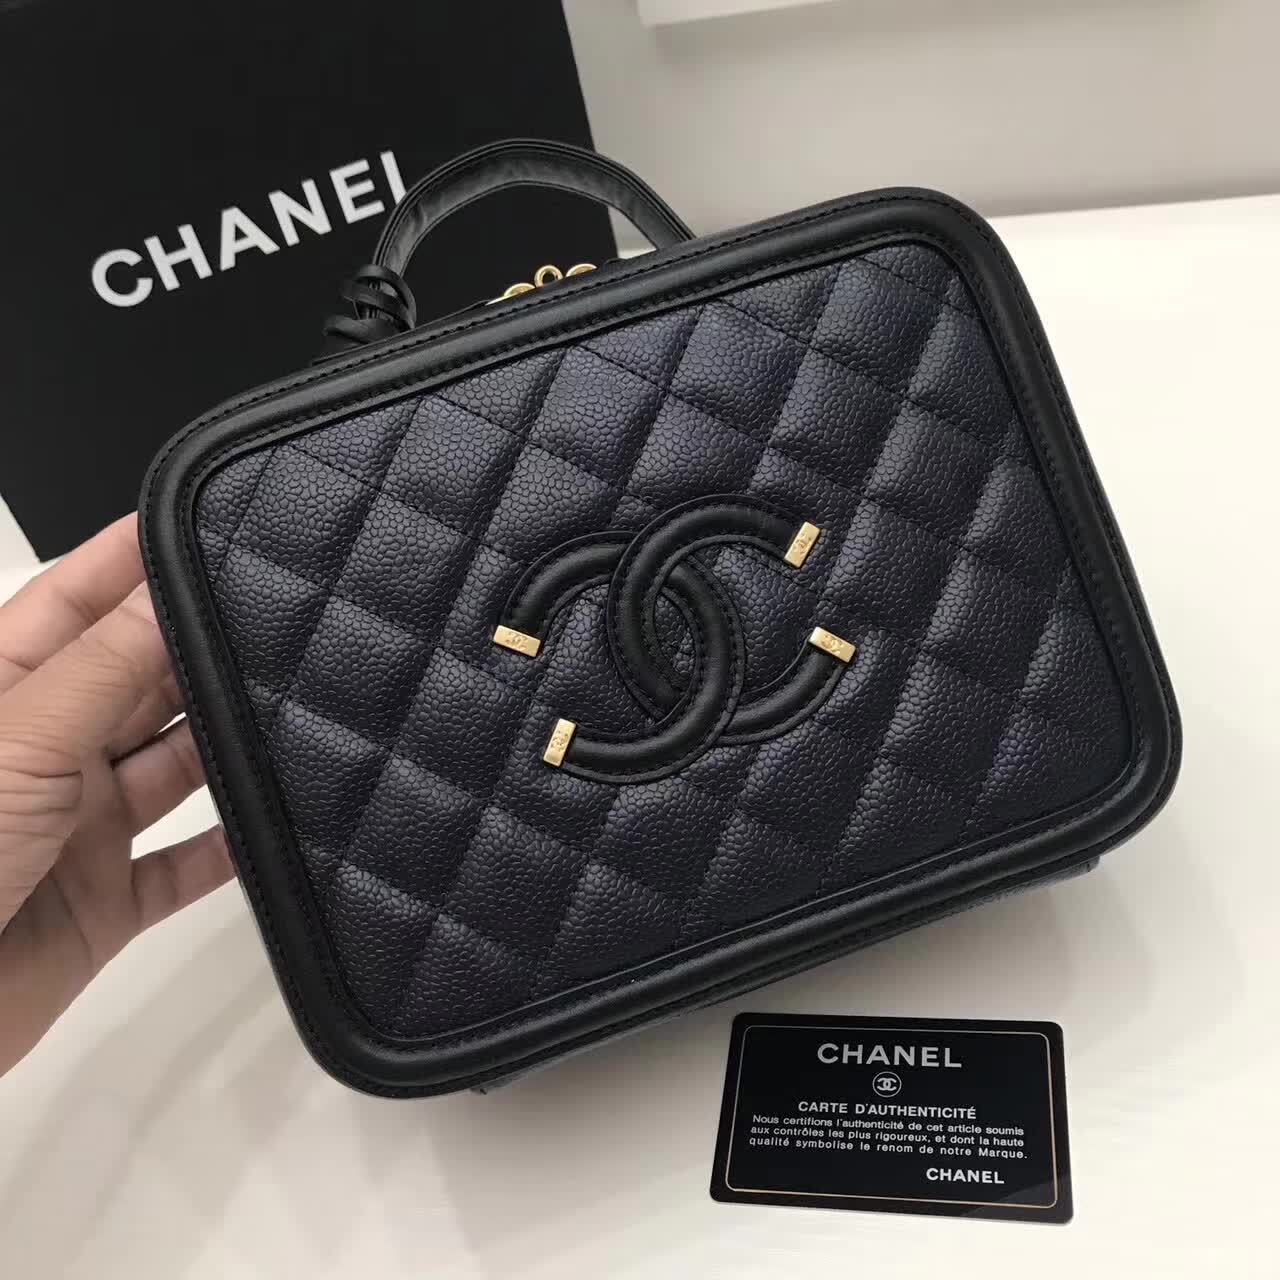 Coco chanel handbags designer crossbody chanel cosmetic bags makeup travel case chanel tote top ...